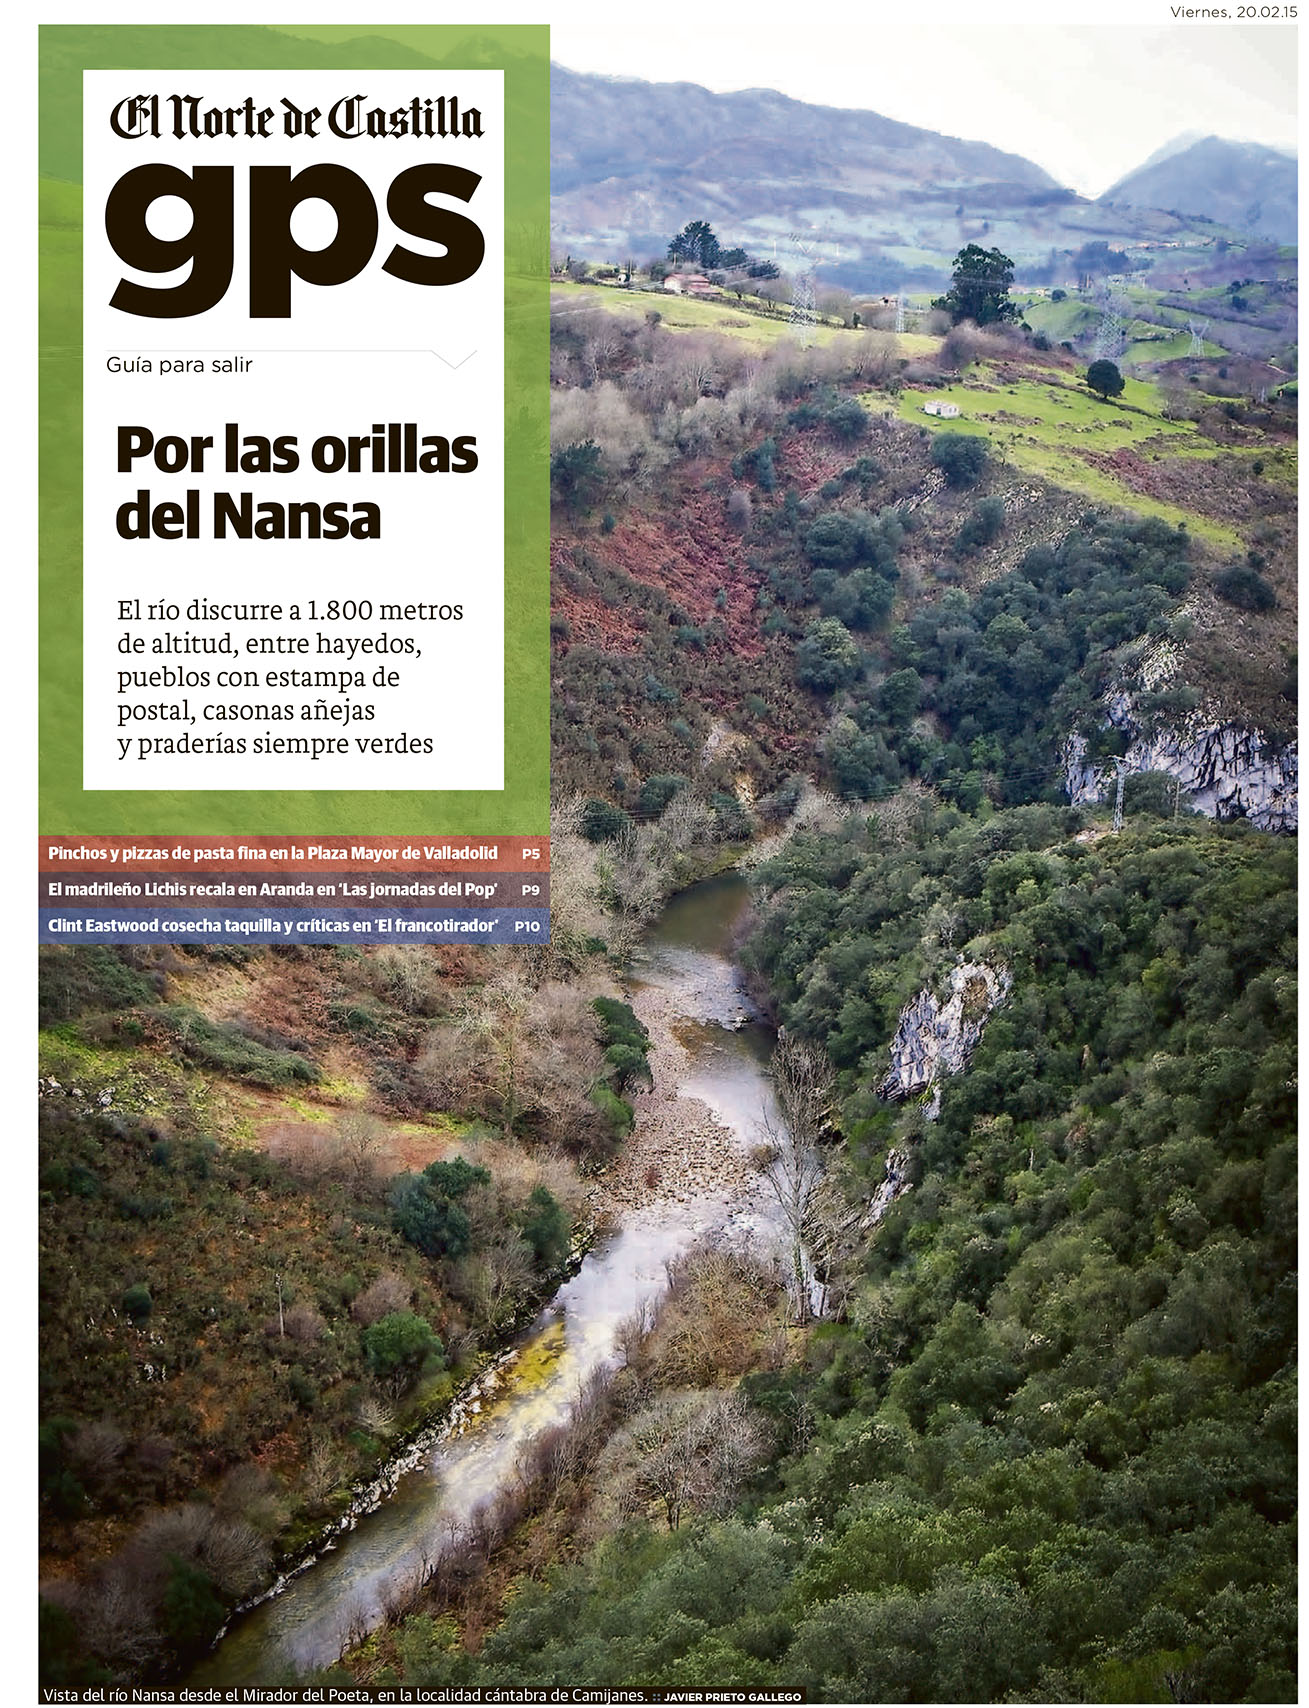 Reportaje sobre la Senda Fluvial del Nansa publicado por Javier Prieto Gallego en EL NORTE DE CASTILLA. 